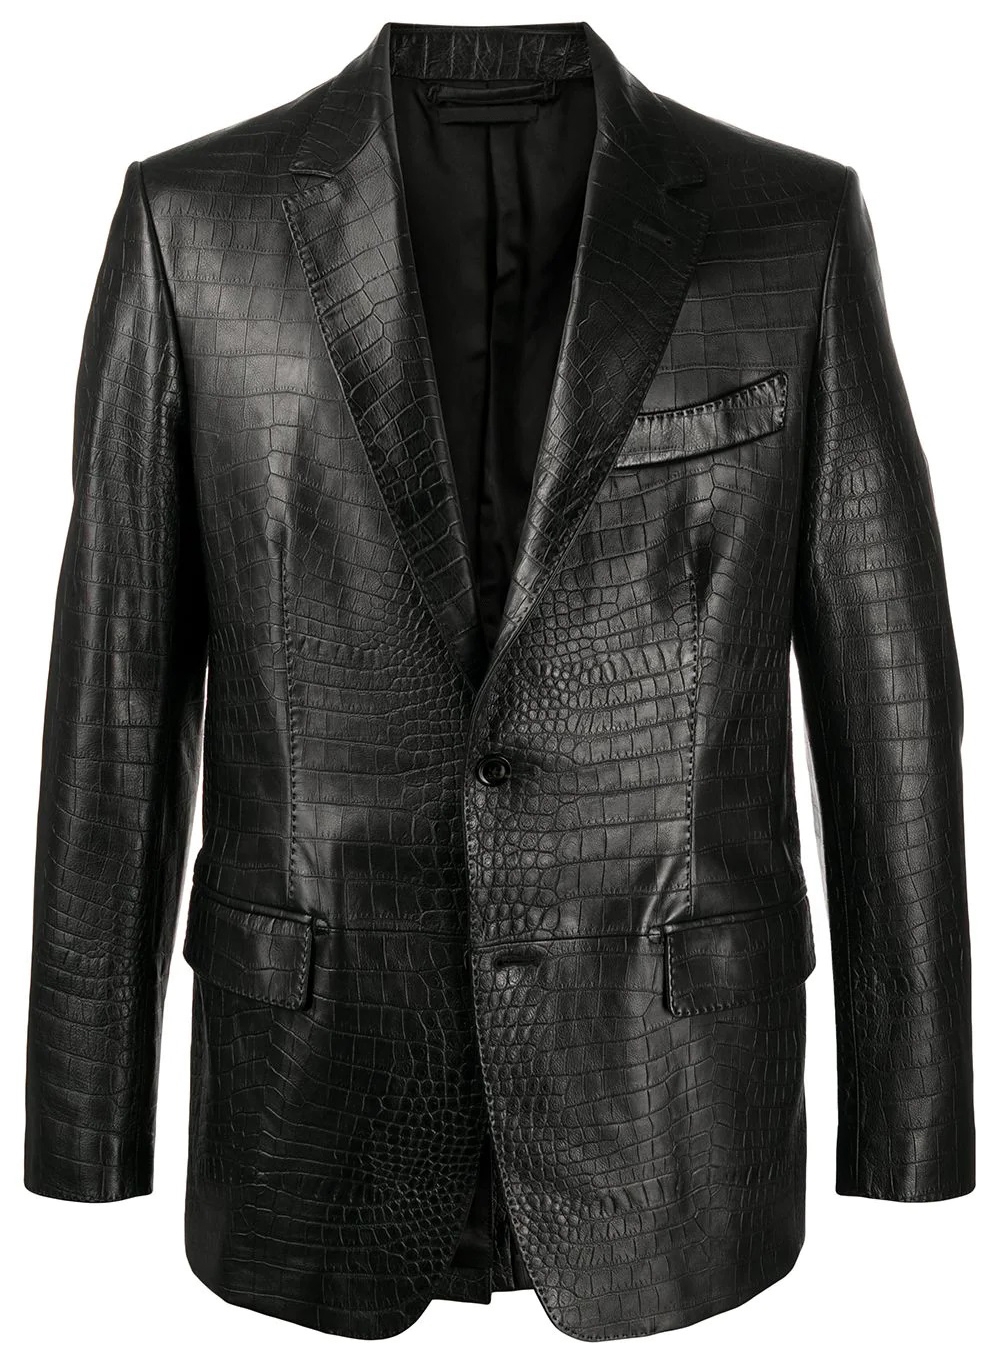 Black Croc Embossed Leather Jacket fur trim hood